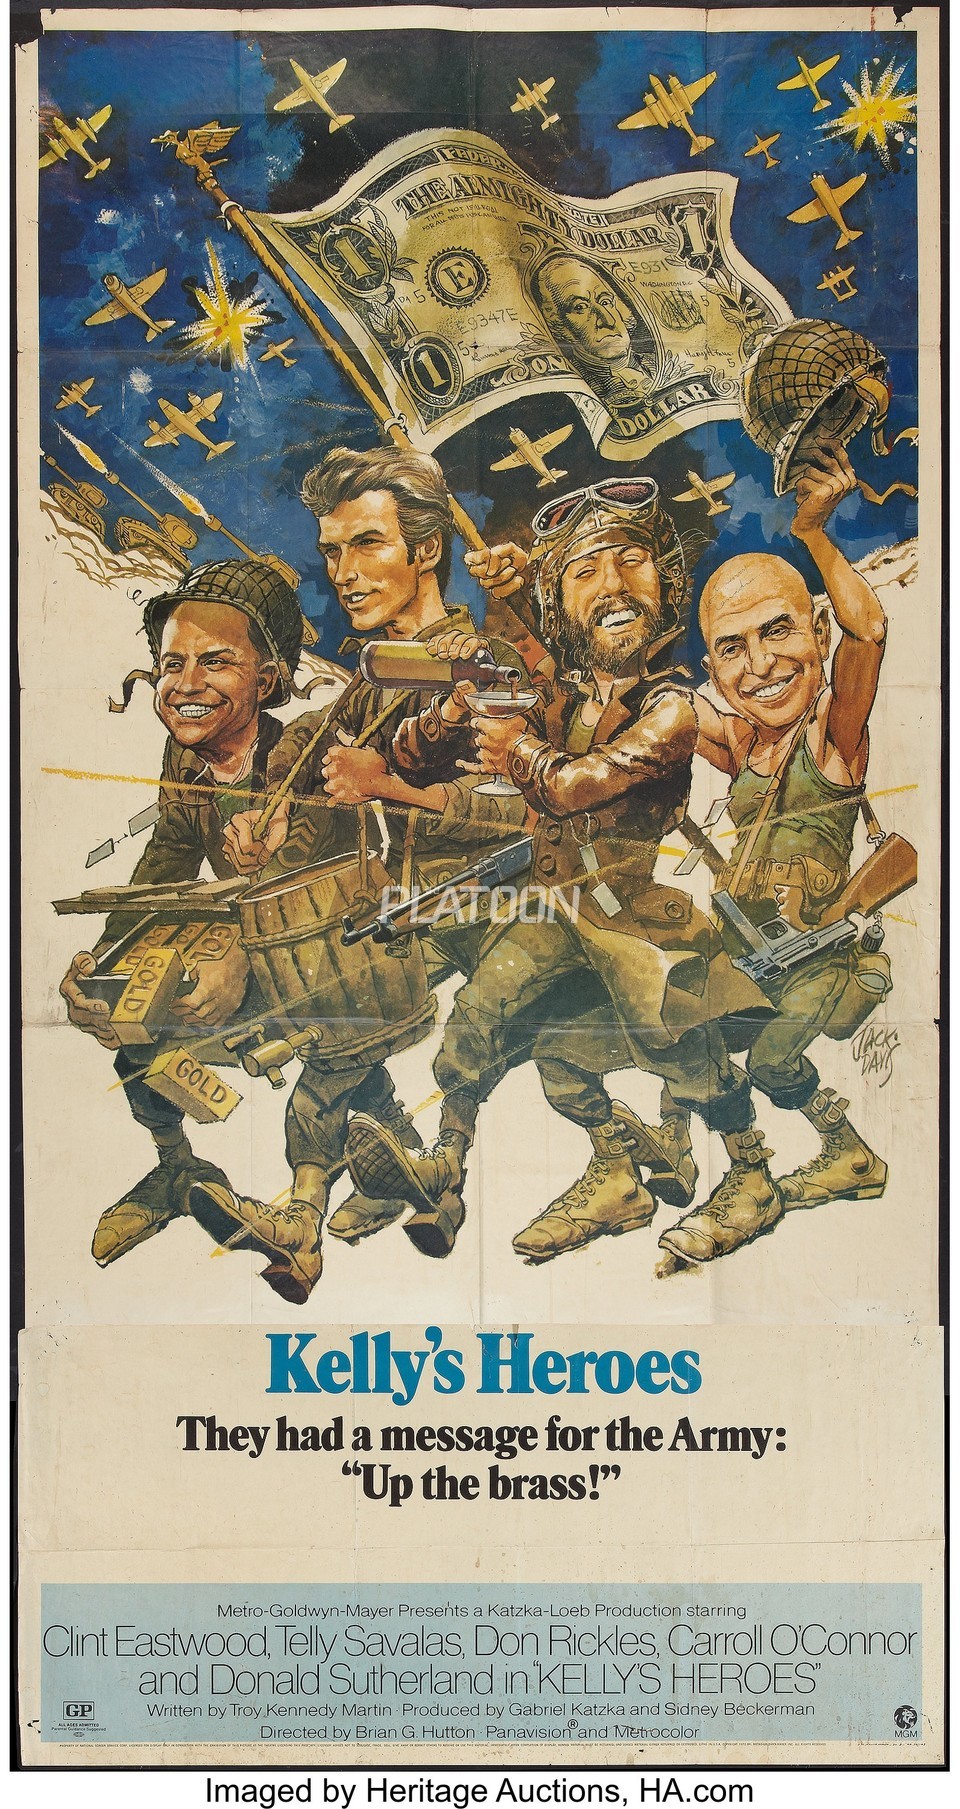 1970년에 개봉한 코미디 전쟁 영화, 켈리의 영웅들(Kelly's Heroes). 